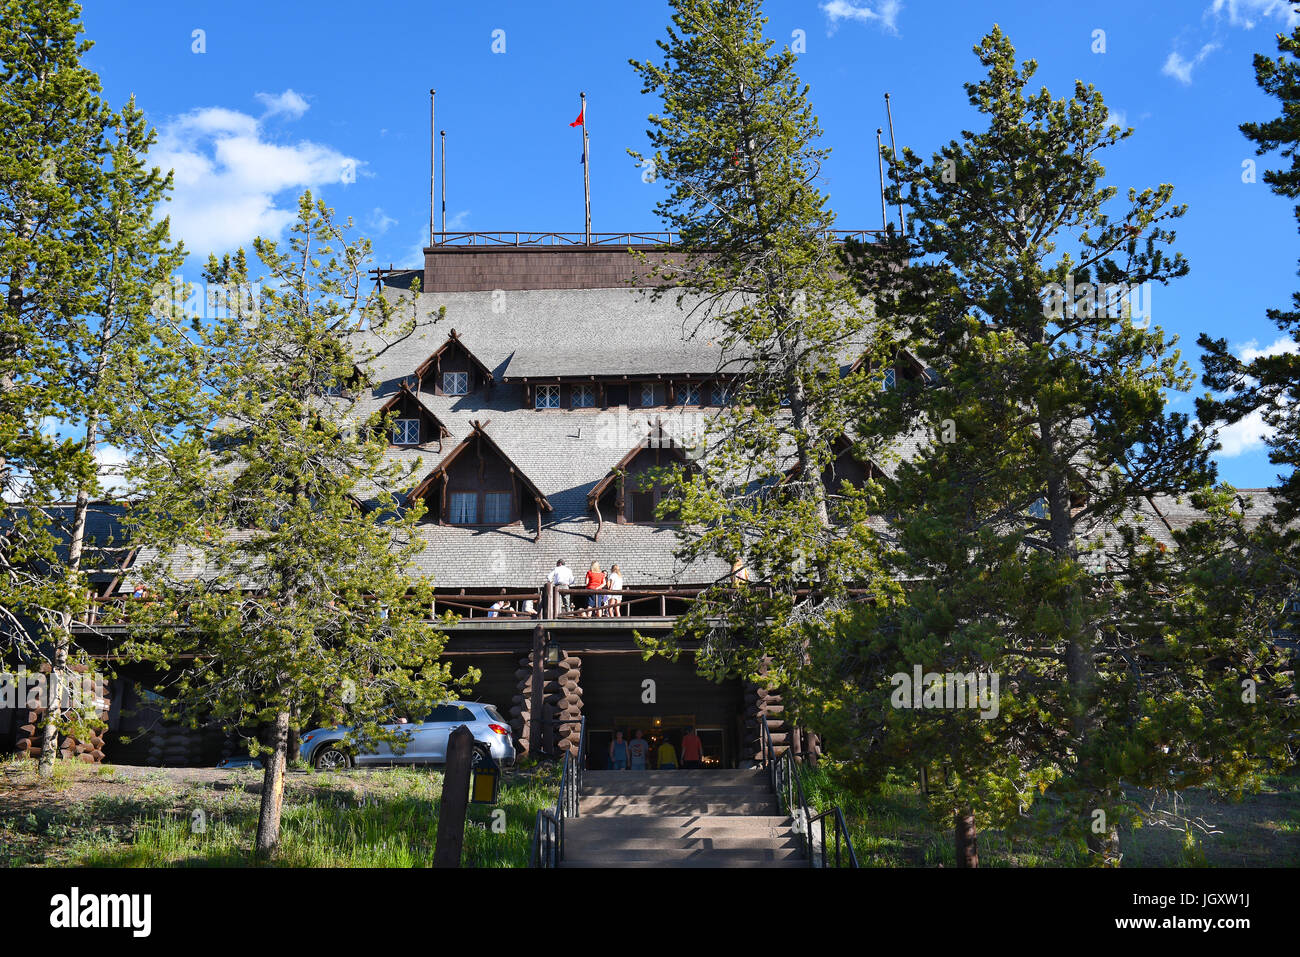 Le parc national de Yellowstone, Wyoming - Juin 25, 21017 : Old Faithful Inn. L'un des plus célèbre et historique hôtels à Yellowstone a commencé l'accueil gue Banque D'Images